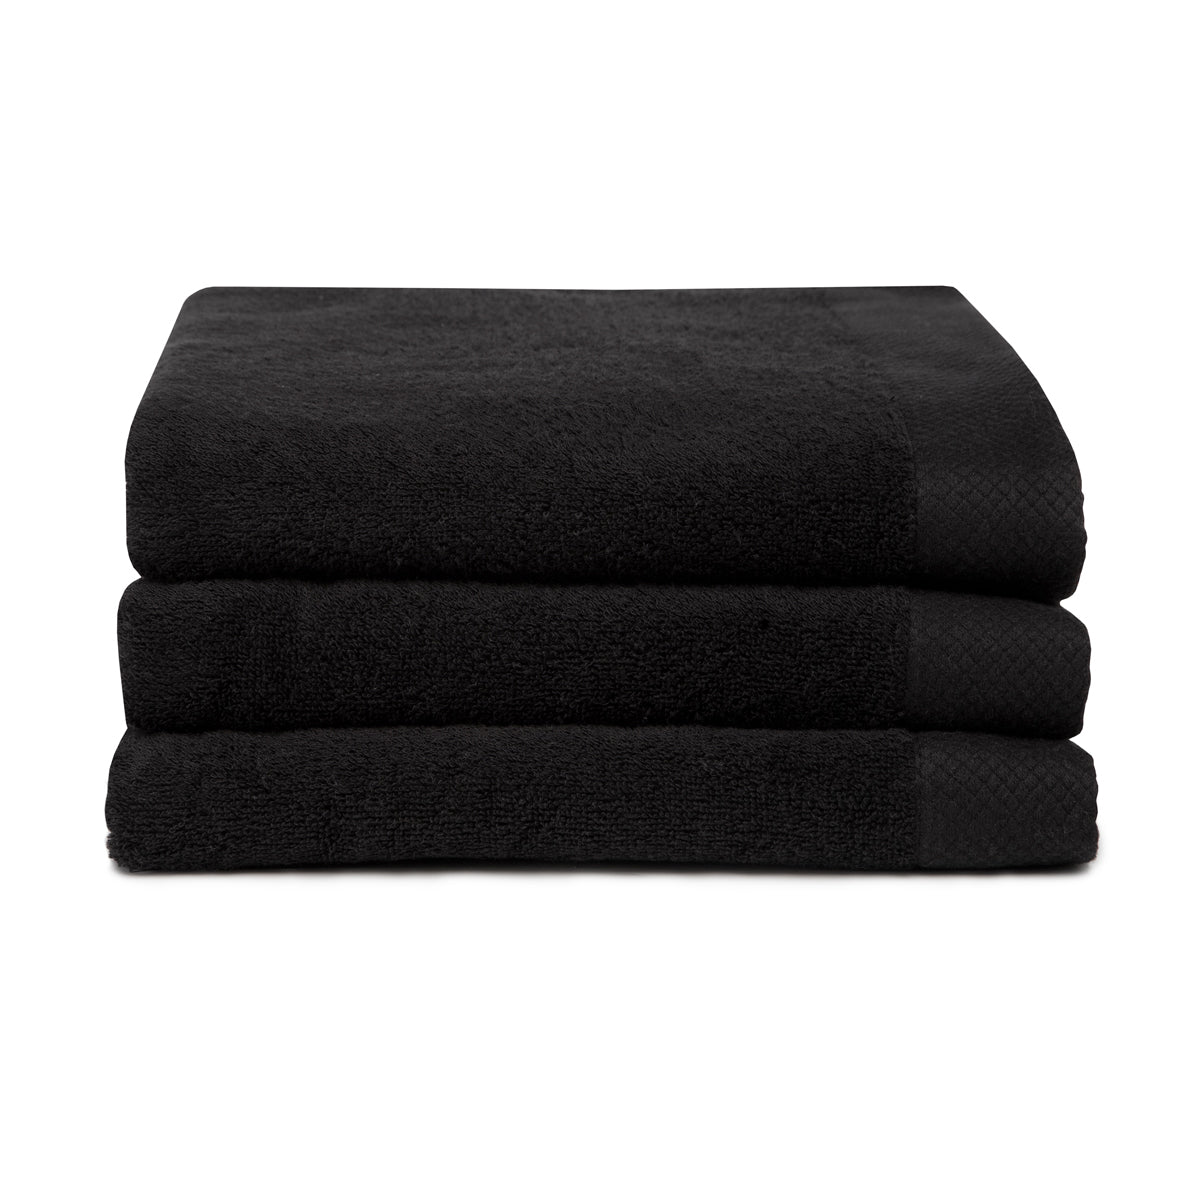 Van der Valk handdoek zwart